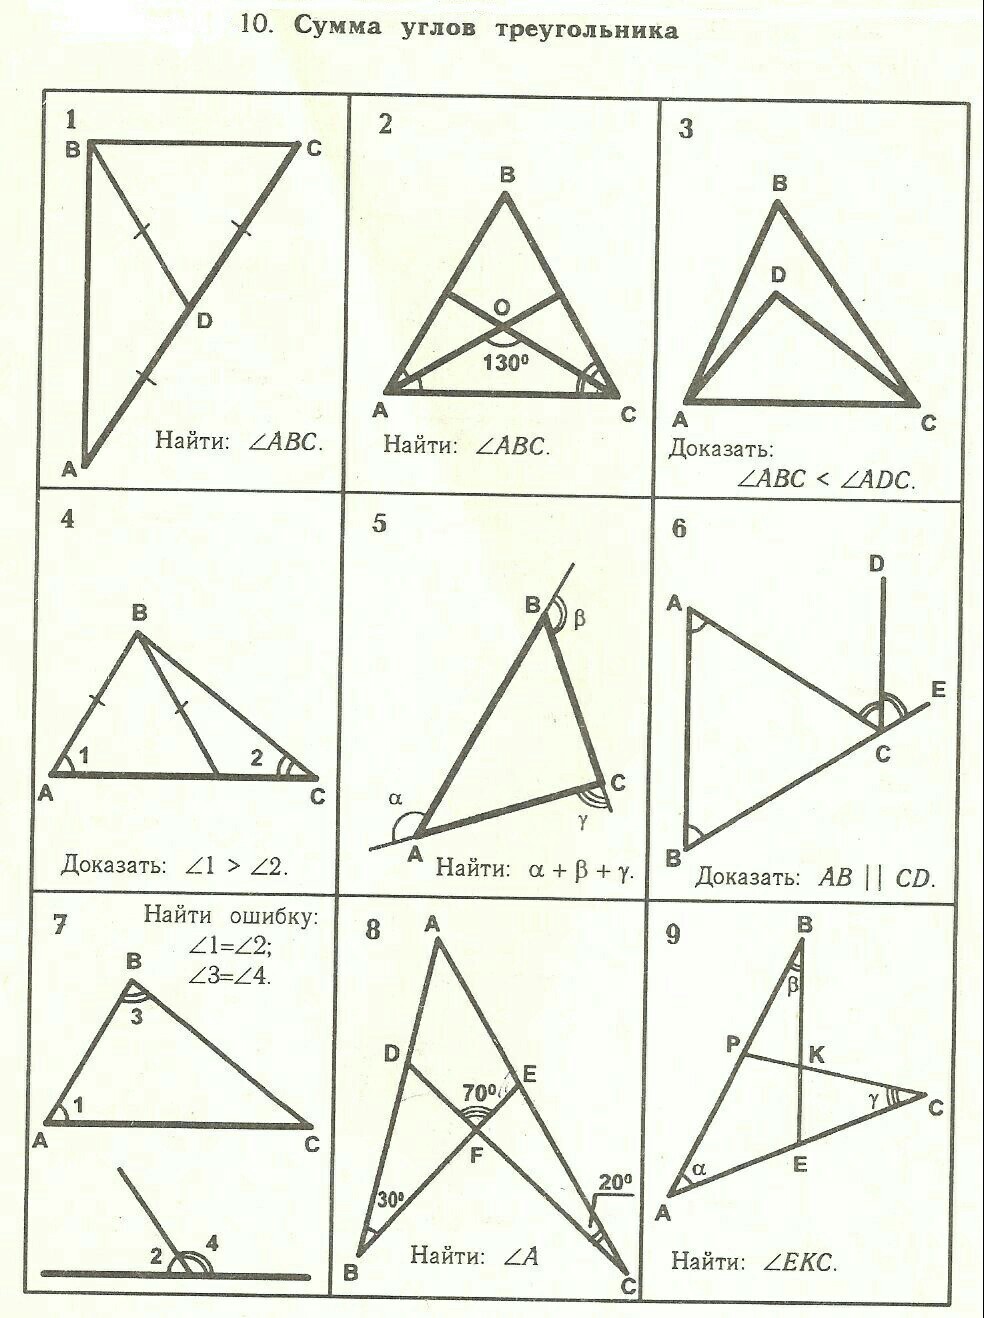 Геометрия 8 класс решение треугольников. Таблица 7.10 сумма углов треугольника. Геометрия 7 сумма углов треугольника задачи. Таблица 7.7 сумма углов треугольника решение. Задачи сумма углов треугольника 7 класс геометрия.